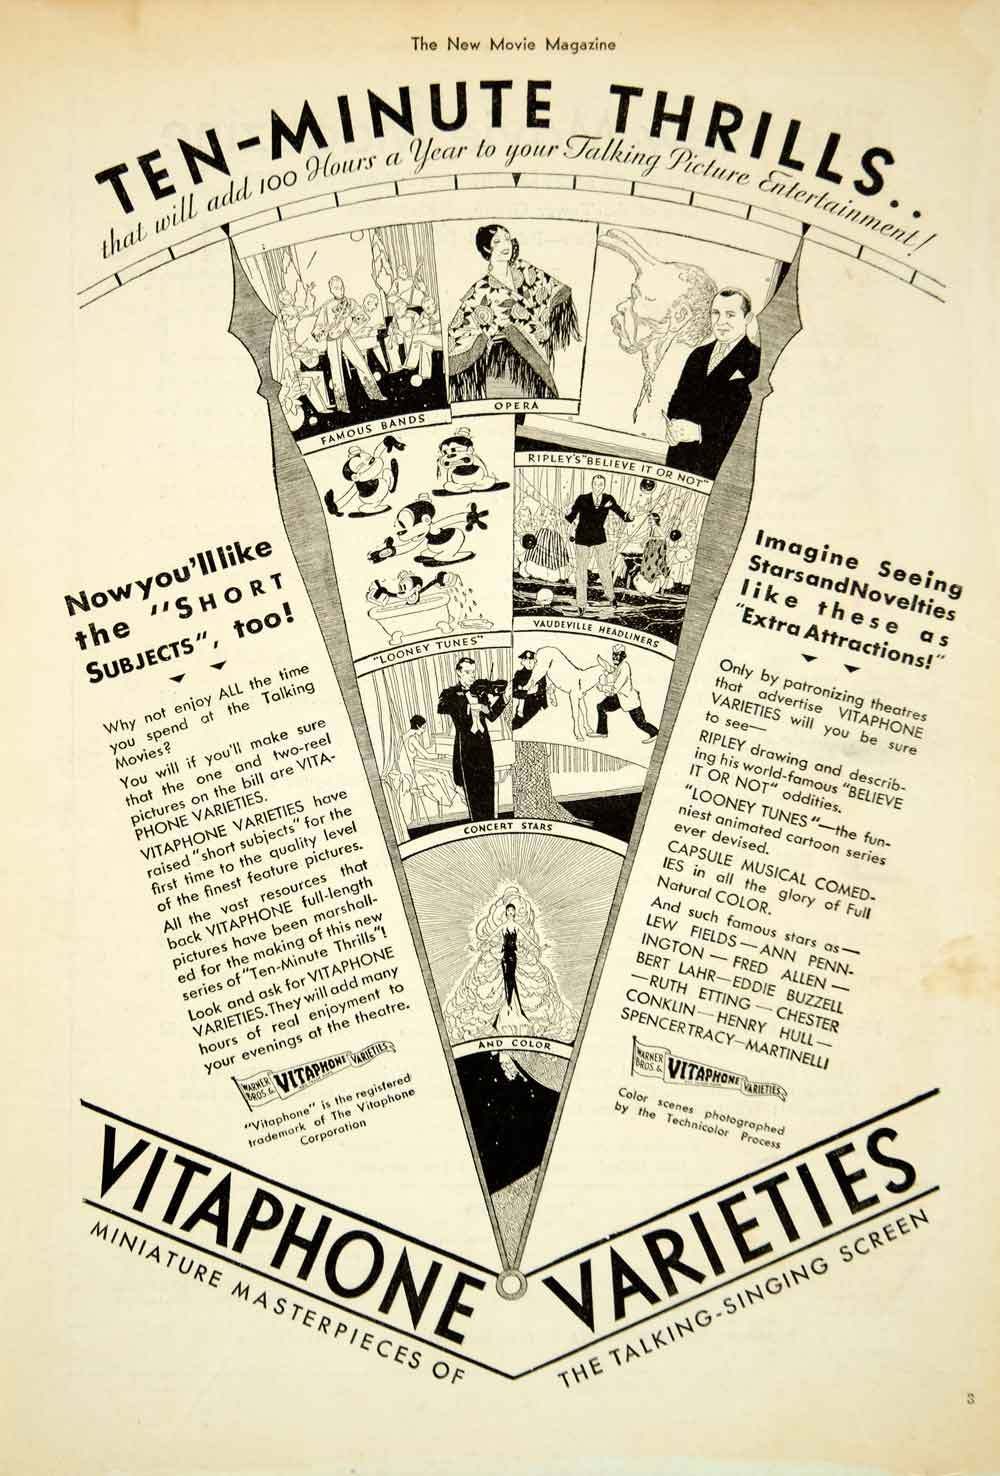 Vitaphone Varieties ad